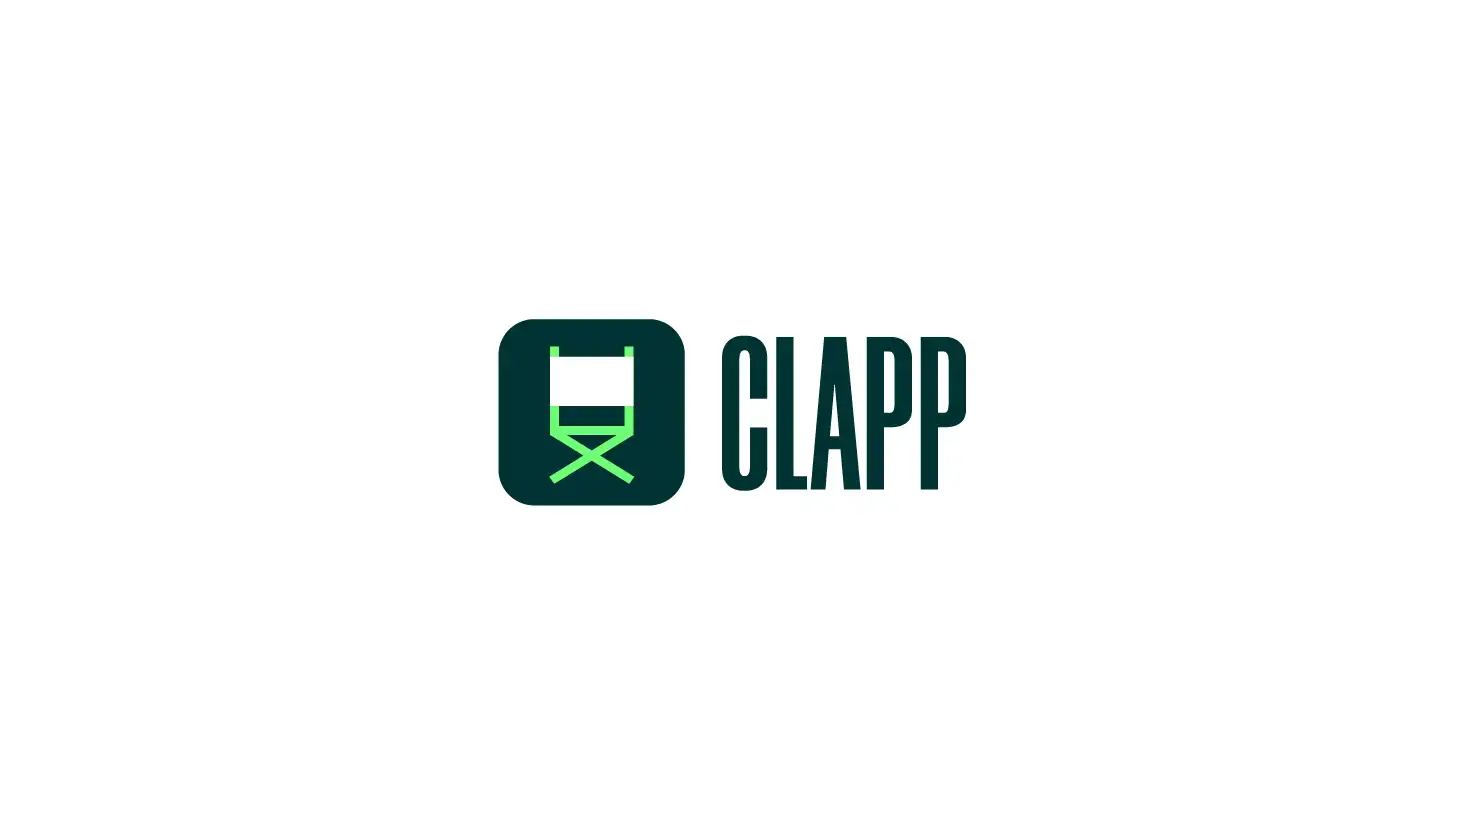 Clapp's logo